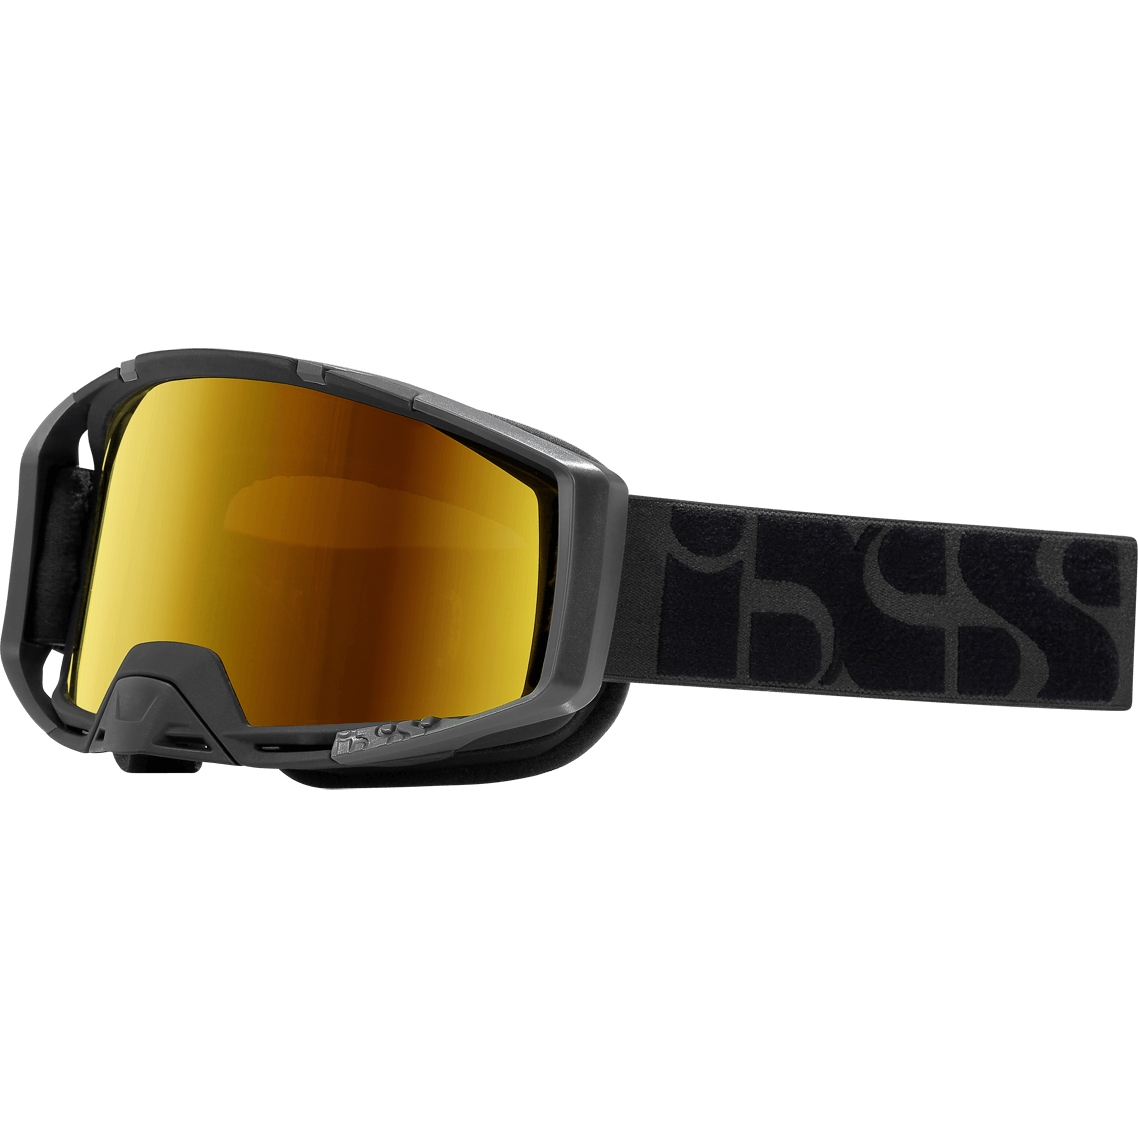 Produktbild von iXS Trigger Race Crossbrille - schwarz